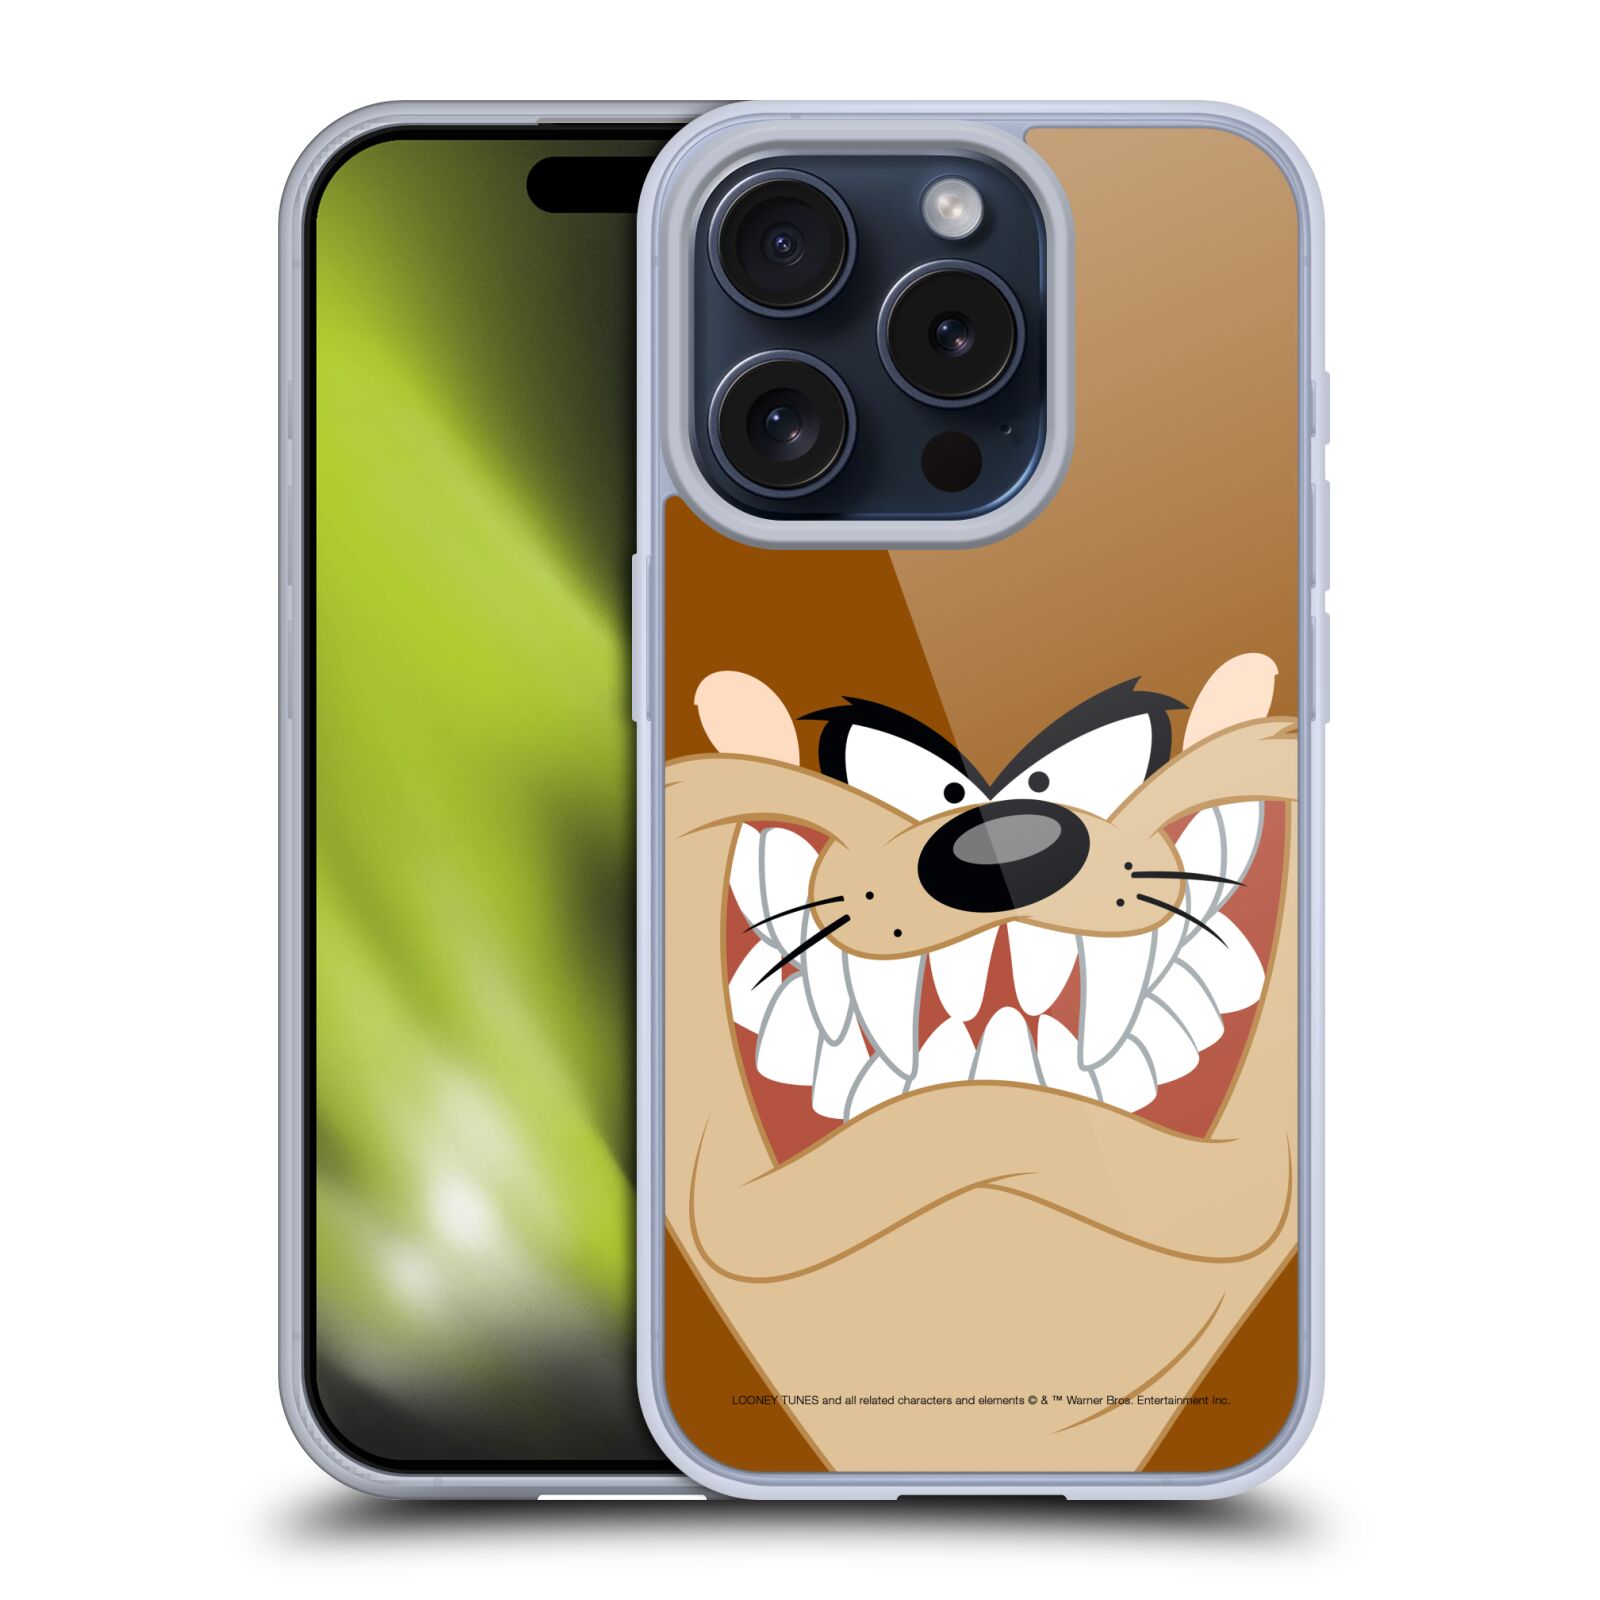 Silikonové lesklé pouzdro na mobil Apple iPhone 15 Pro - Looney Tunes - Tasmanian Devil - Tasmánský Čert (Silikonový lesklý kryt, obal, pouzdro na mobilní telefon Apple iPhone 15 Pro s licencovaným motivem Looney Tunes - Tasmanian Devil - Tasmánský Čert)